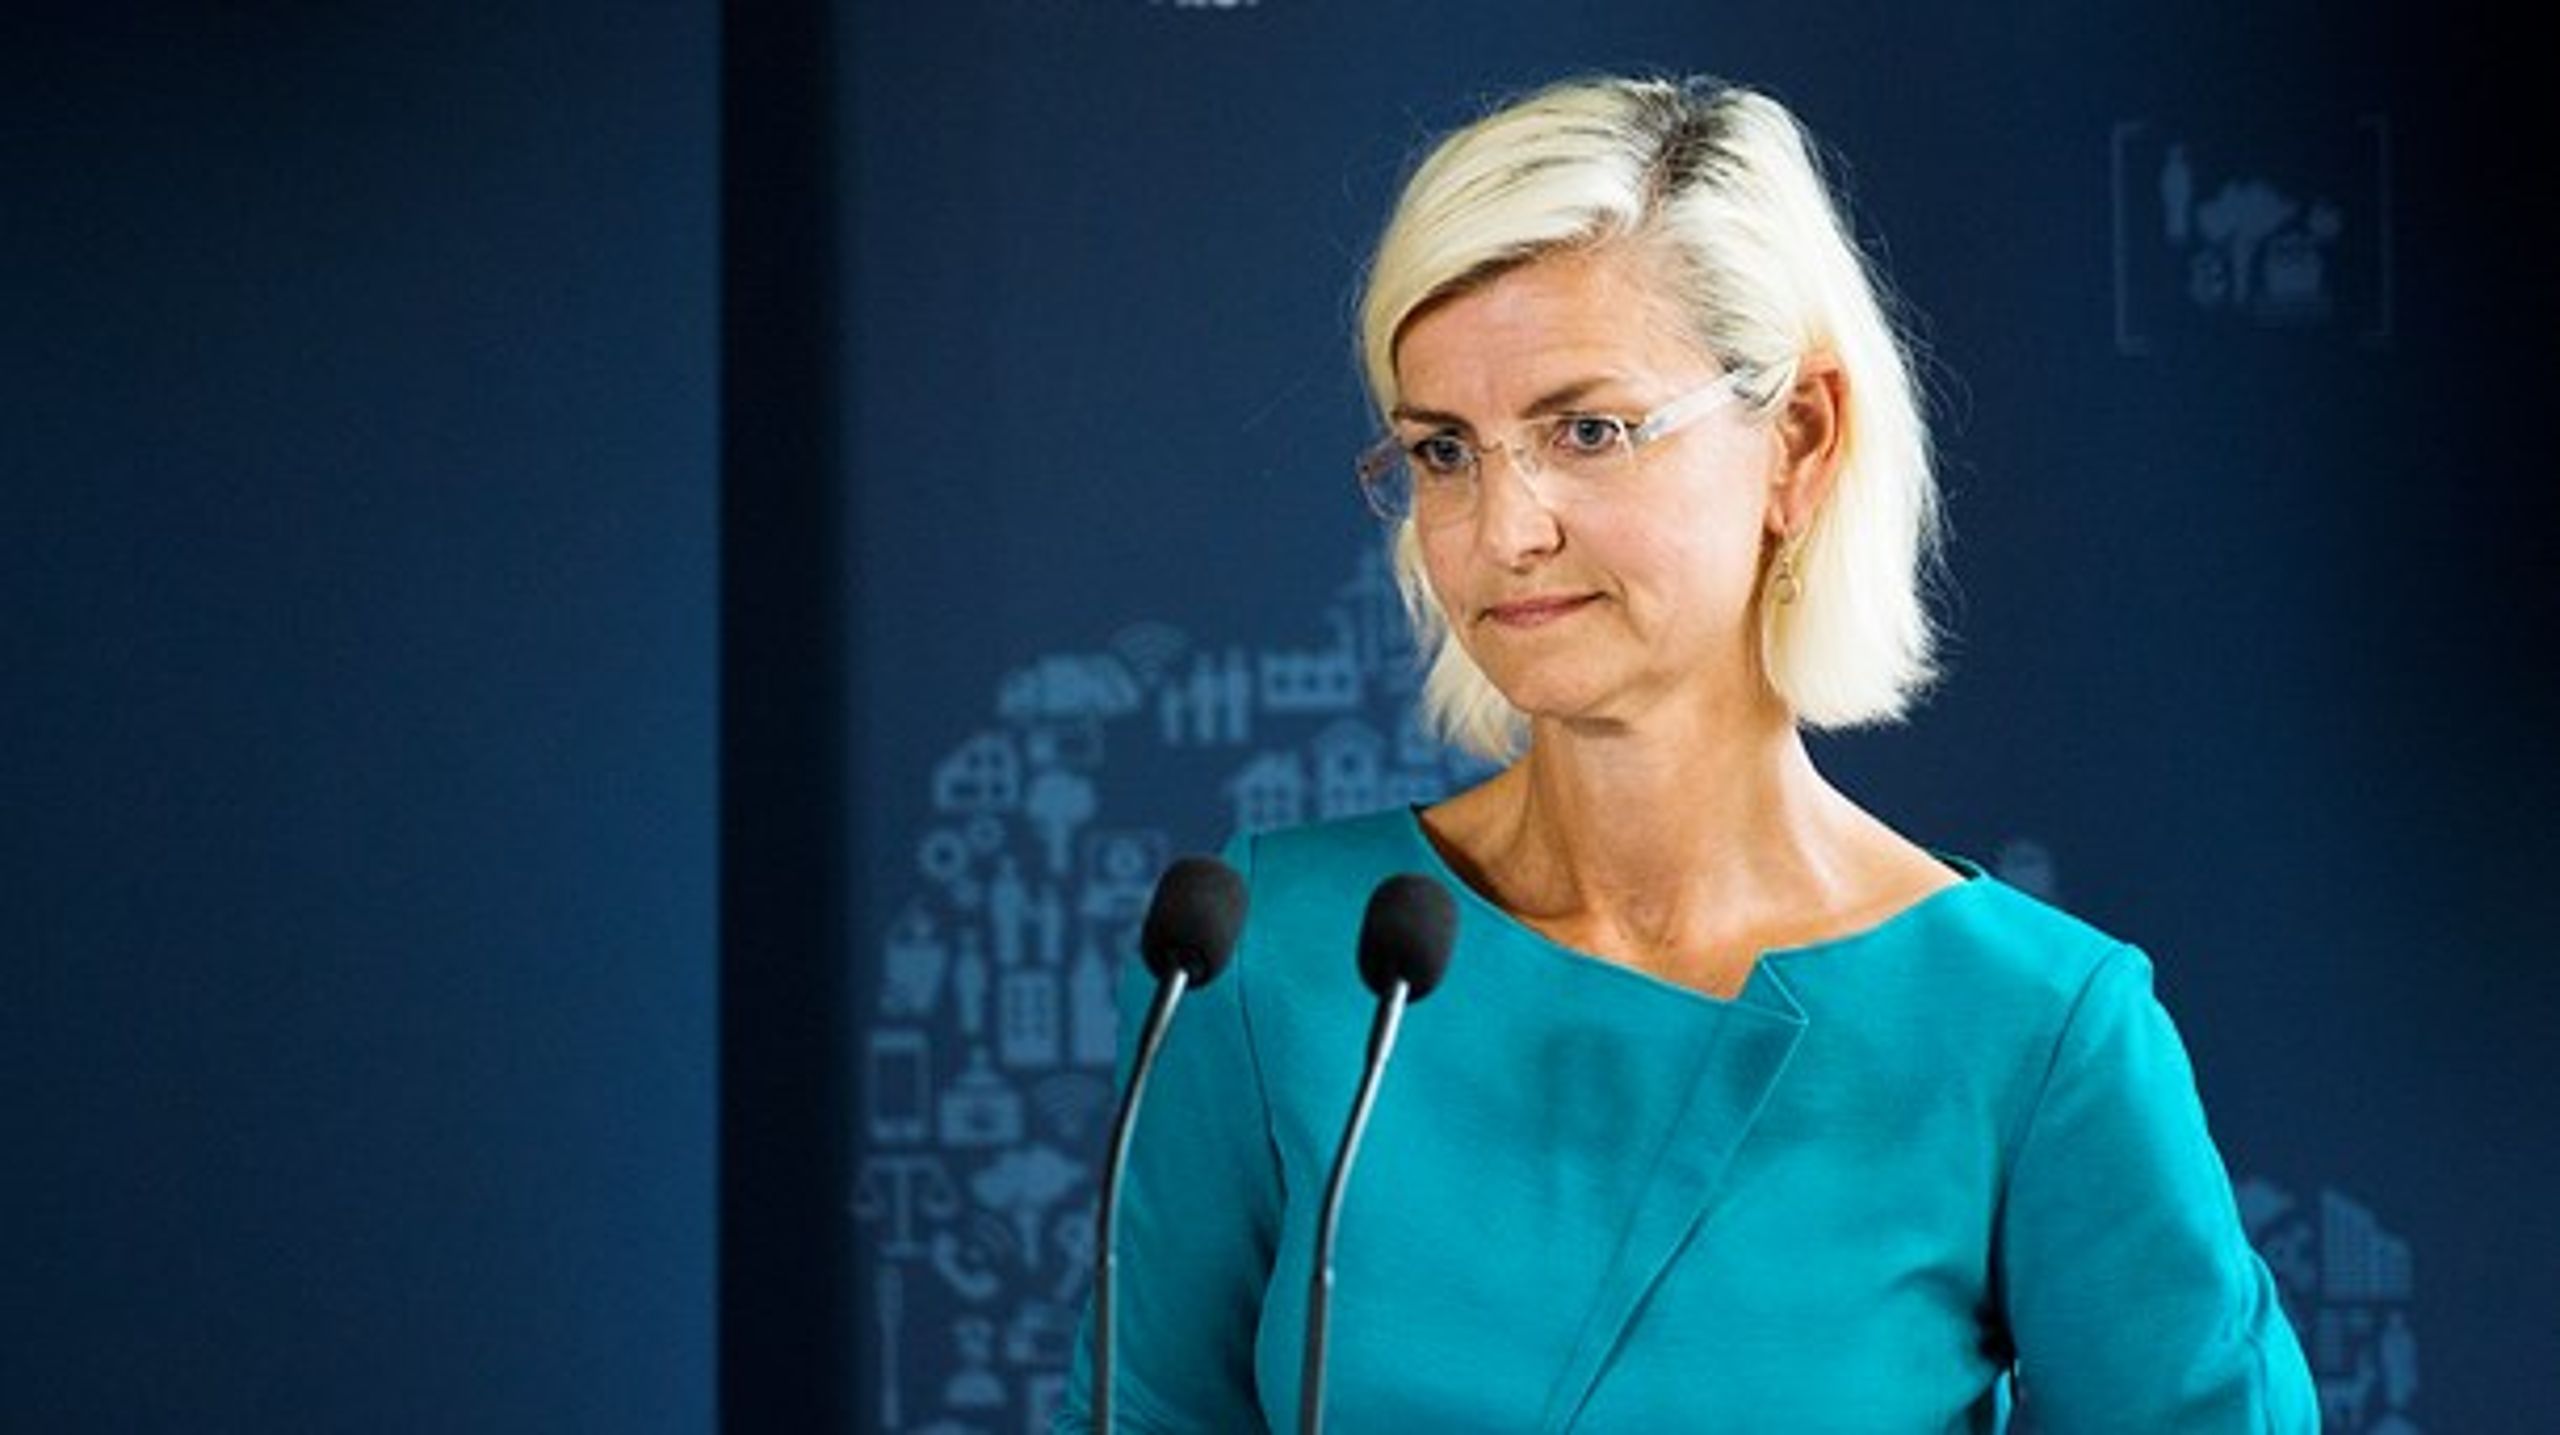 Uddannelses- og forskningsminister Ulla Tørnæs (V) vil ikke gribe ind i universiteternes autonomi. <br>